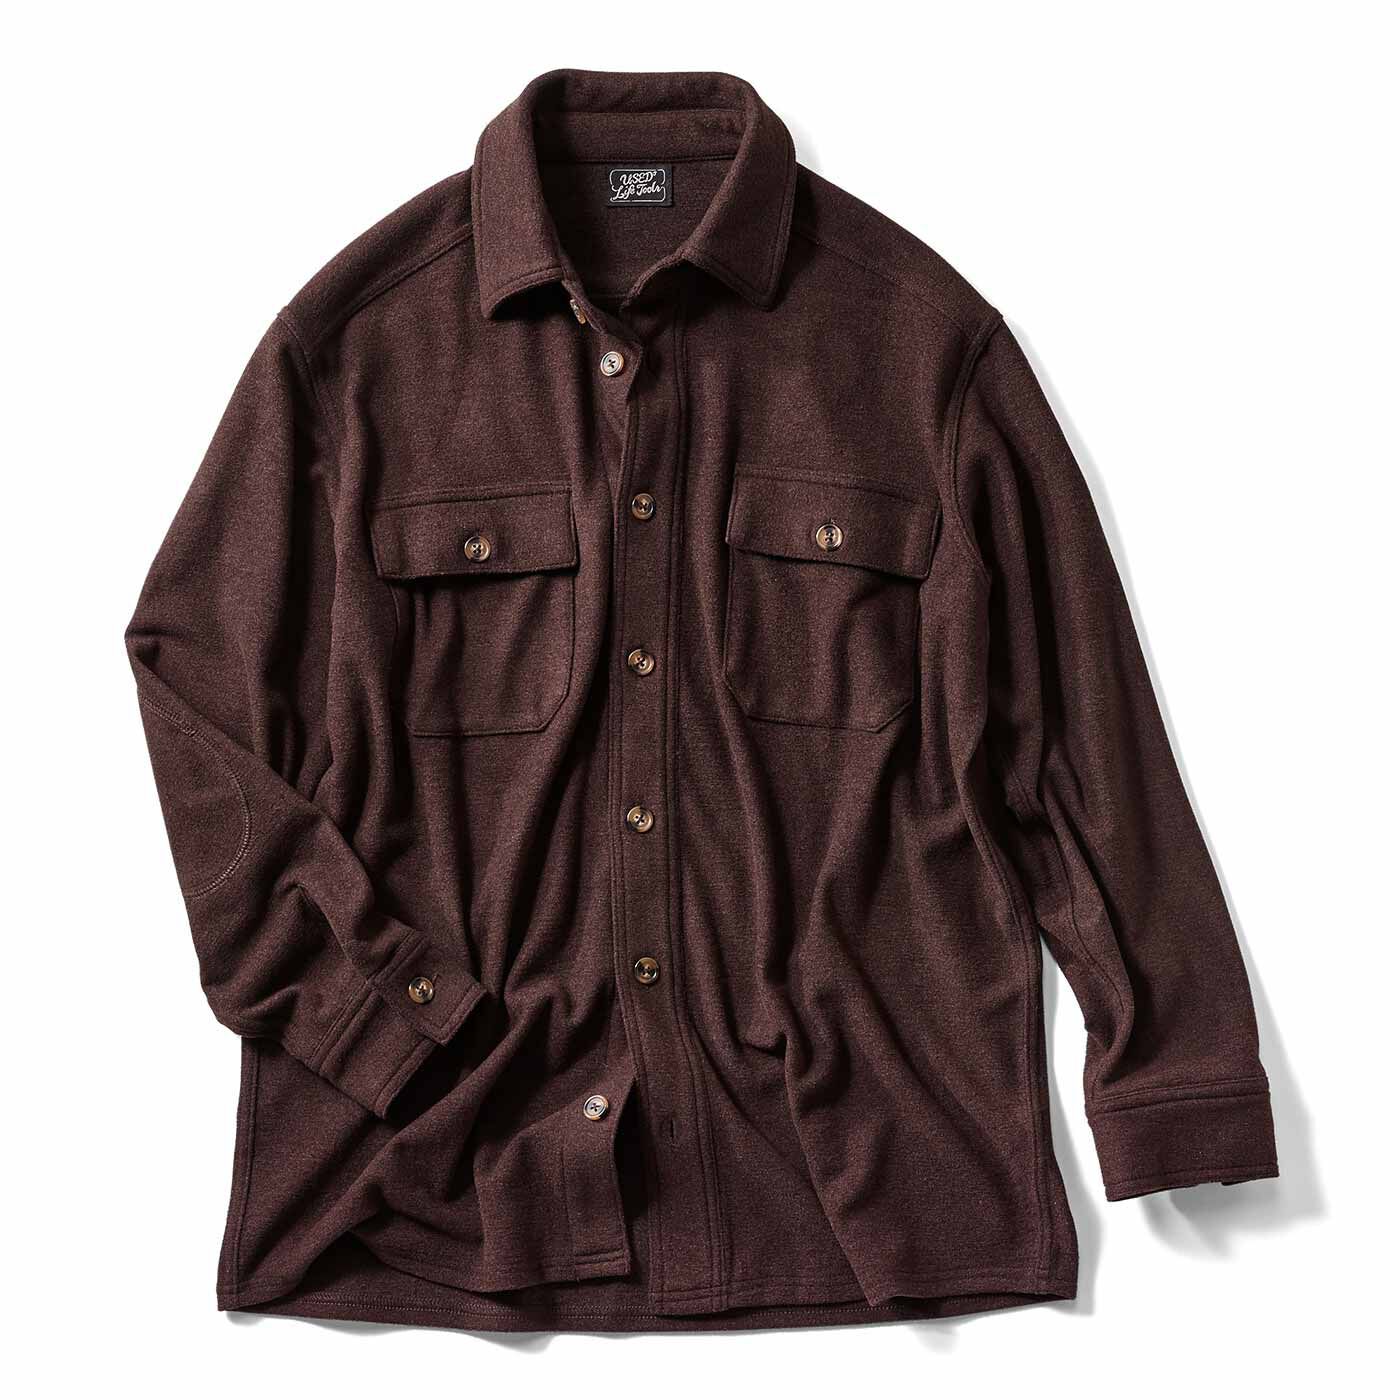 USEDo|ウールシャツのような風合いの のびのびあったか起毛CPOシャツジャケット〈レトロブラウン〉|ひじパッチ付き。